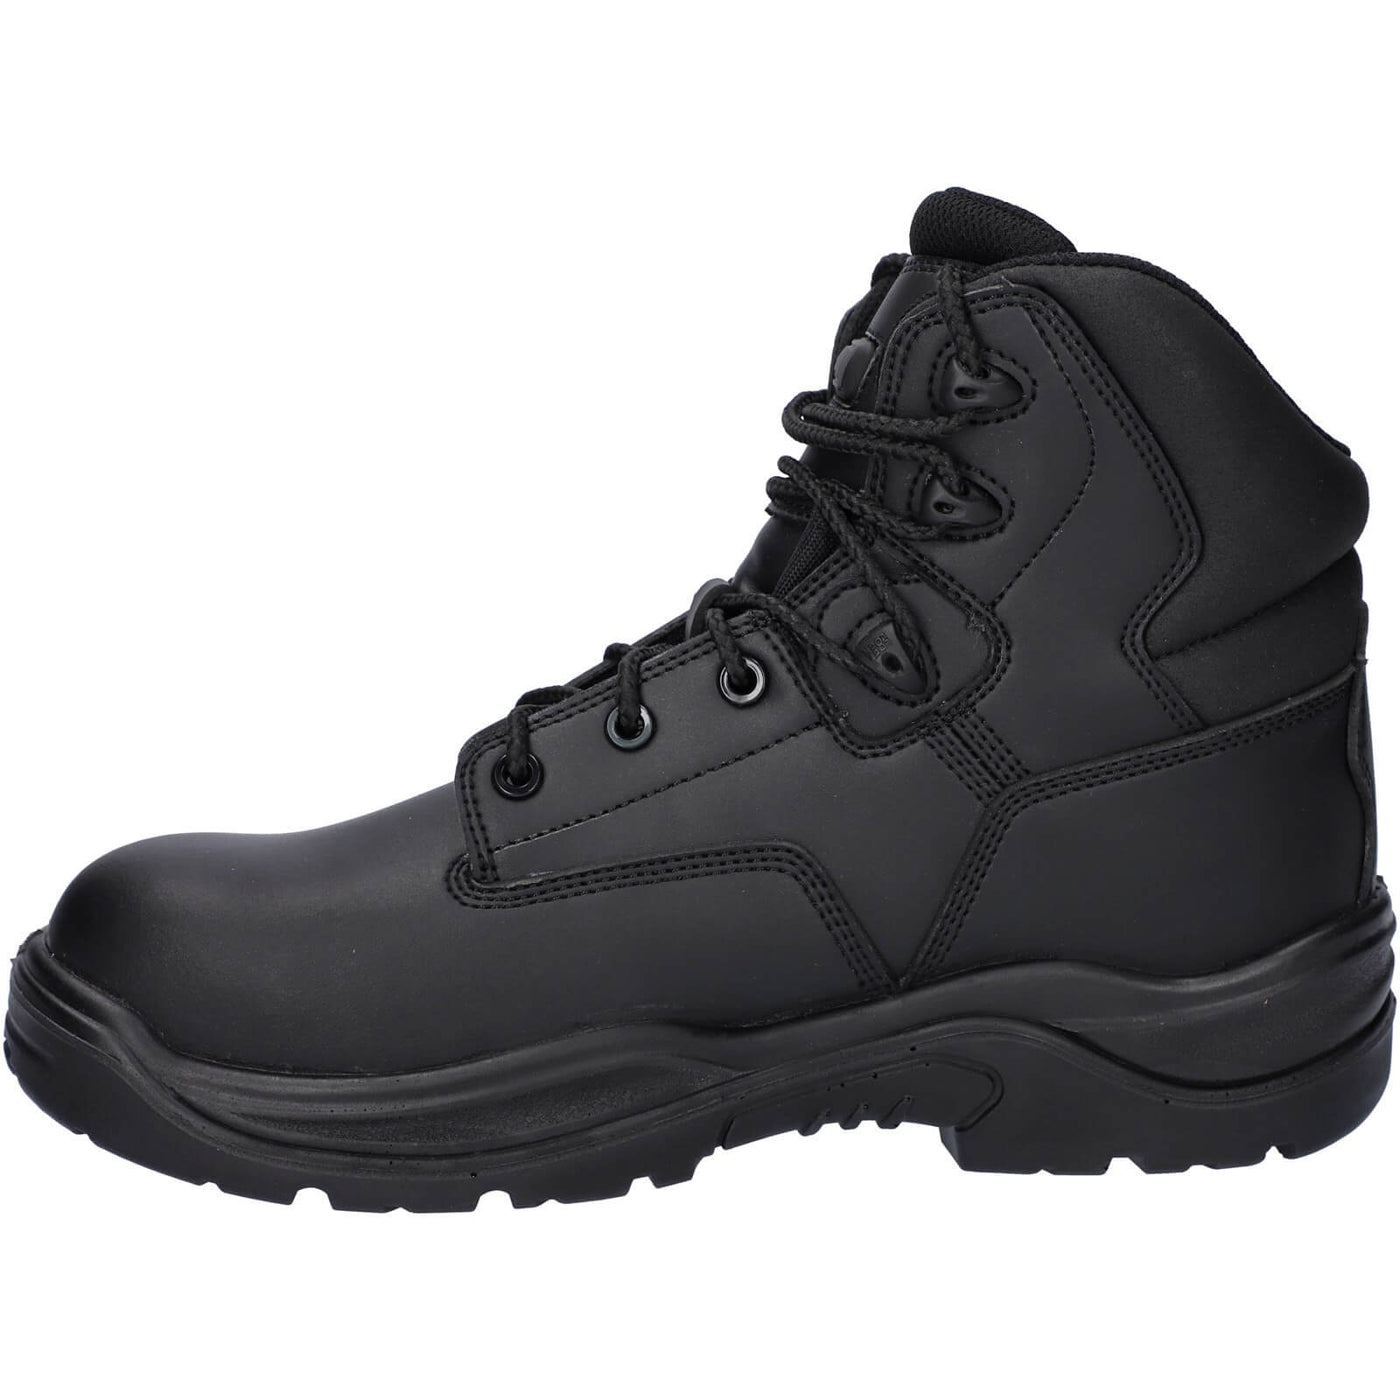 Amblers 241 Safety Boots Black 7#colour_black